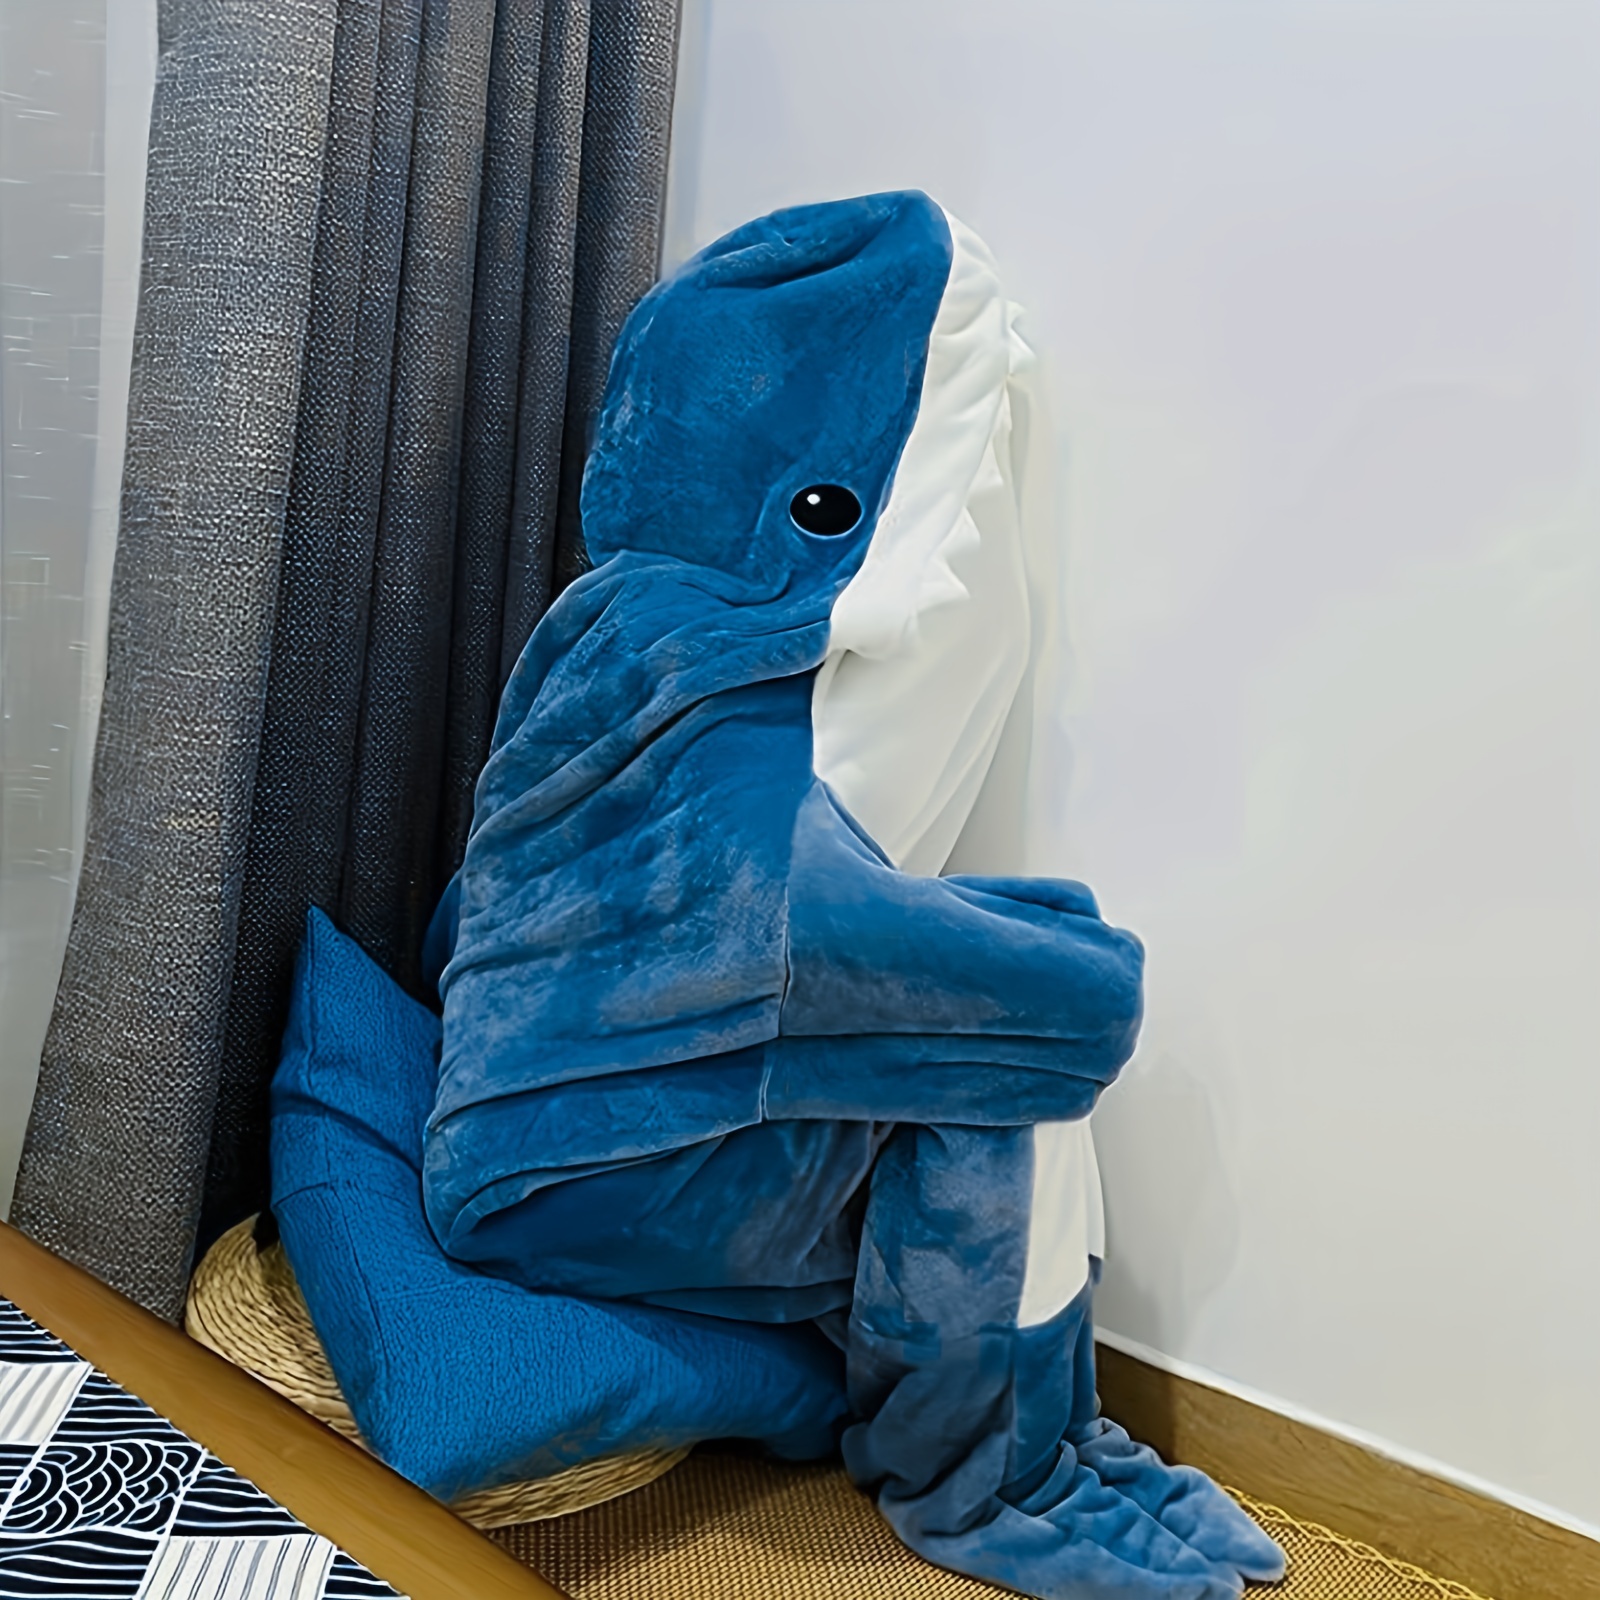 Pijama de manta de tiburón para adultos, saco de dormir de franela suave  con capucha, ajuste suelto usable, pijamas de una pieza en casa Fivean  unisex